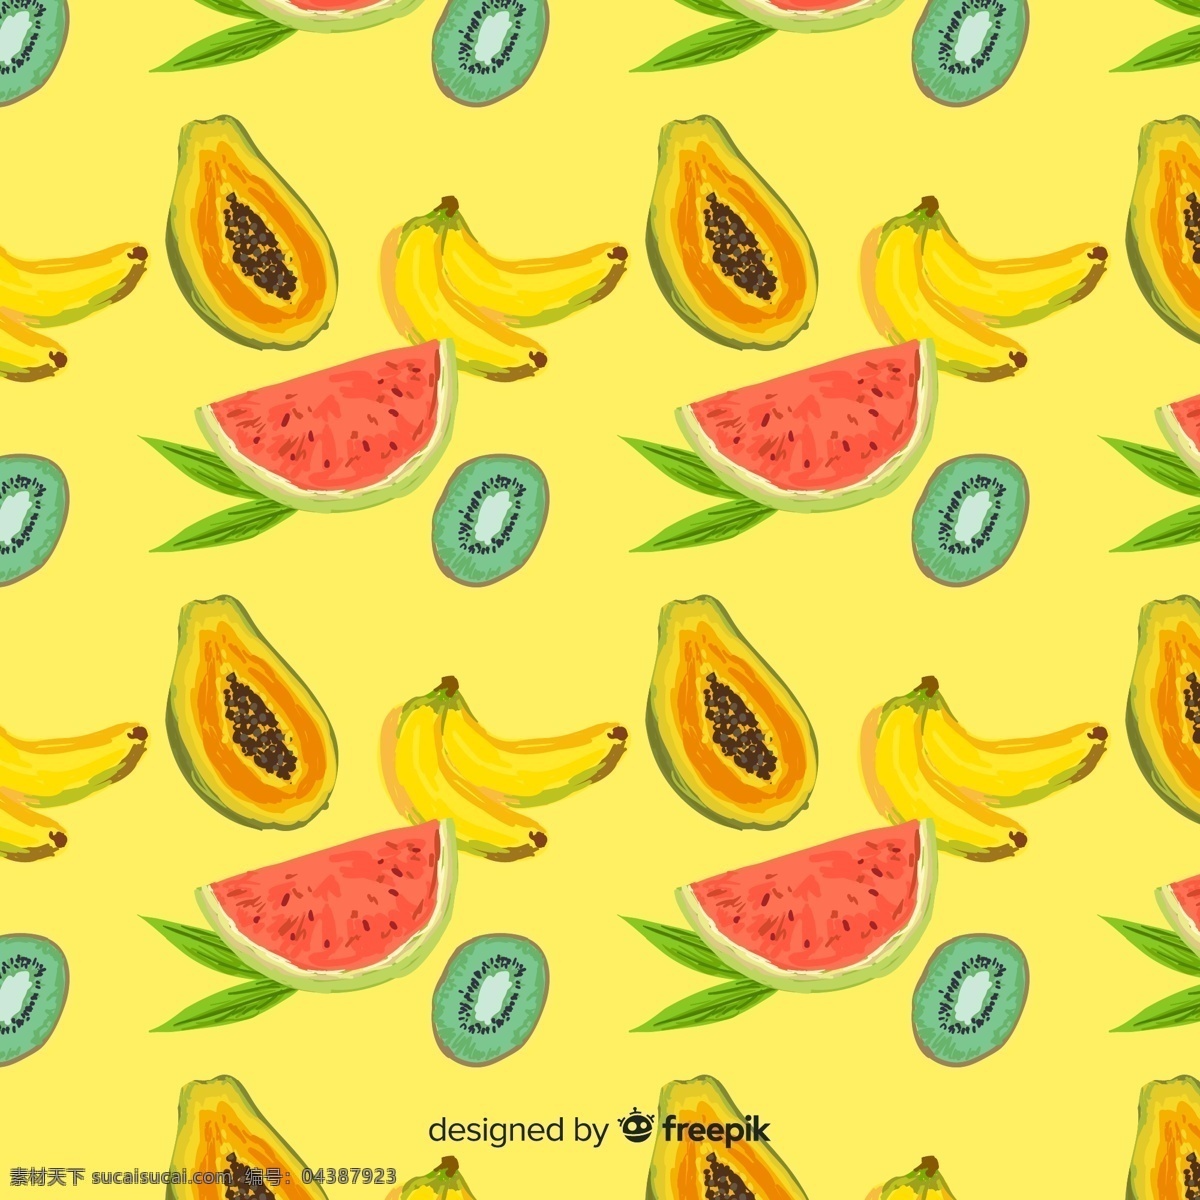 创意 水果 无缝 背景 猕猴桃 木瓜 香蕉 西瓜 背景与底纹 底纹边框 背景底纹